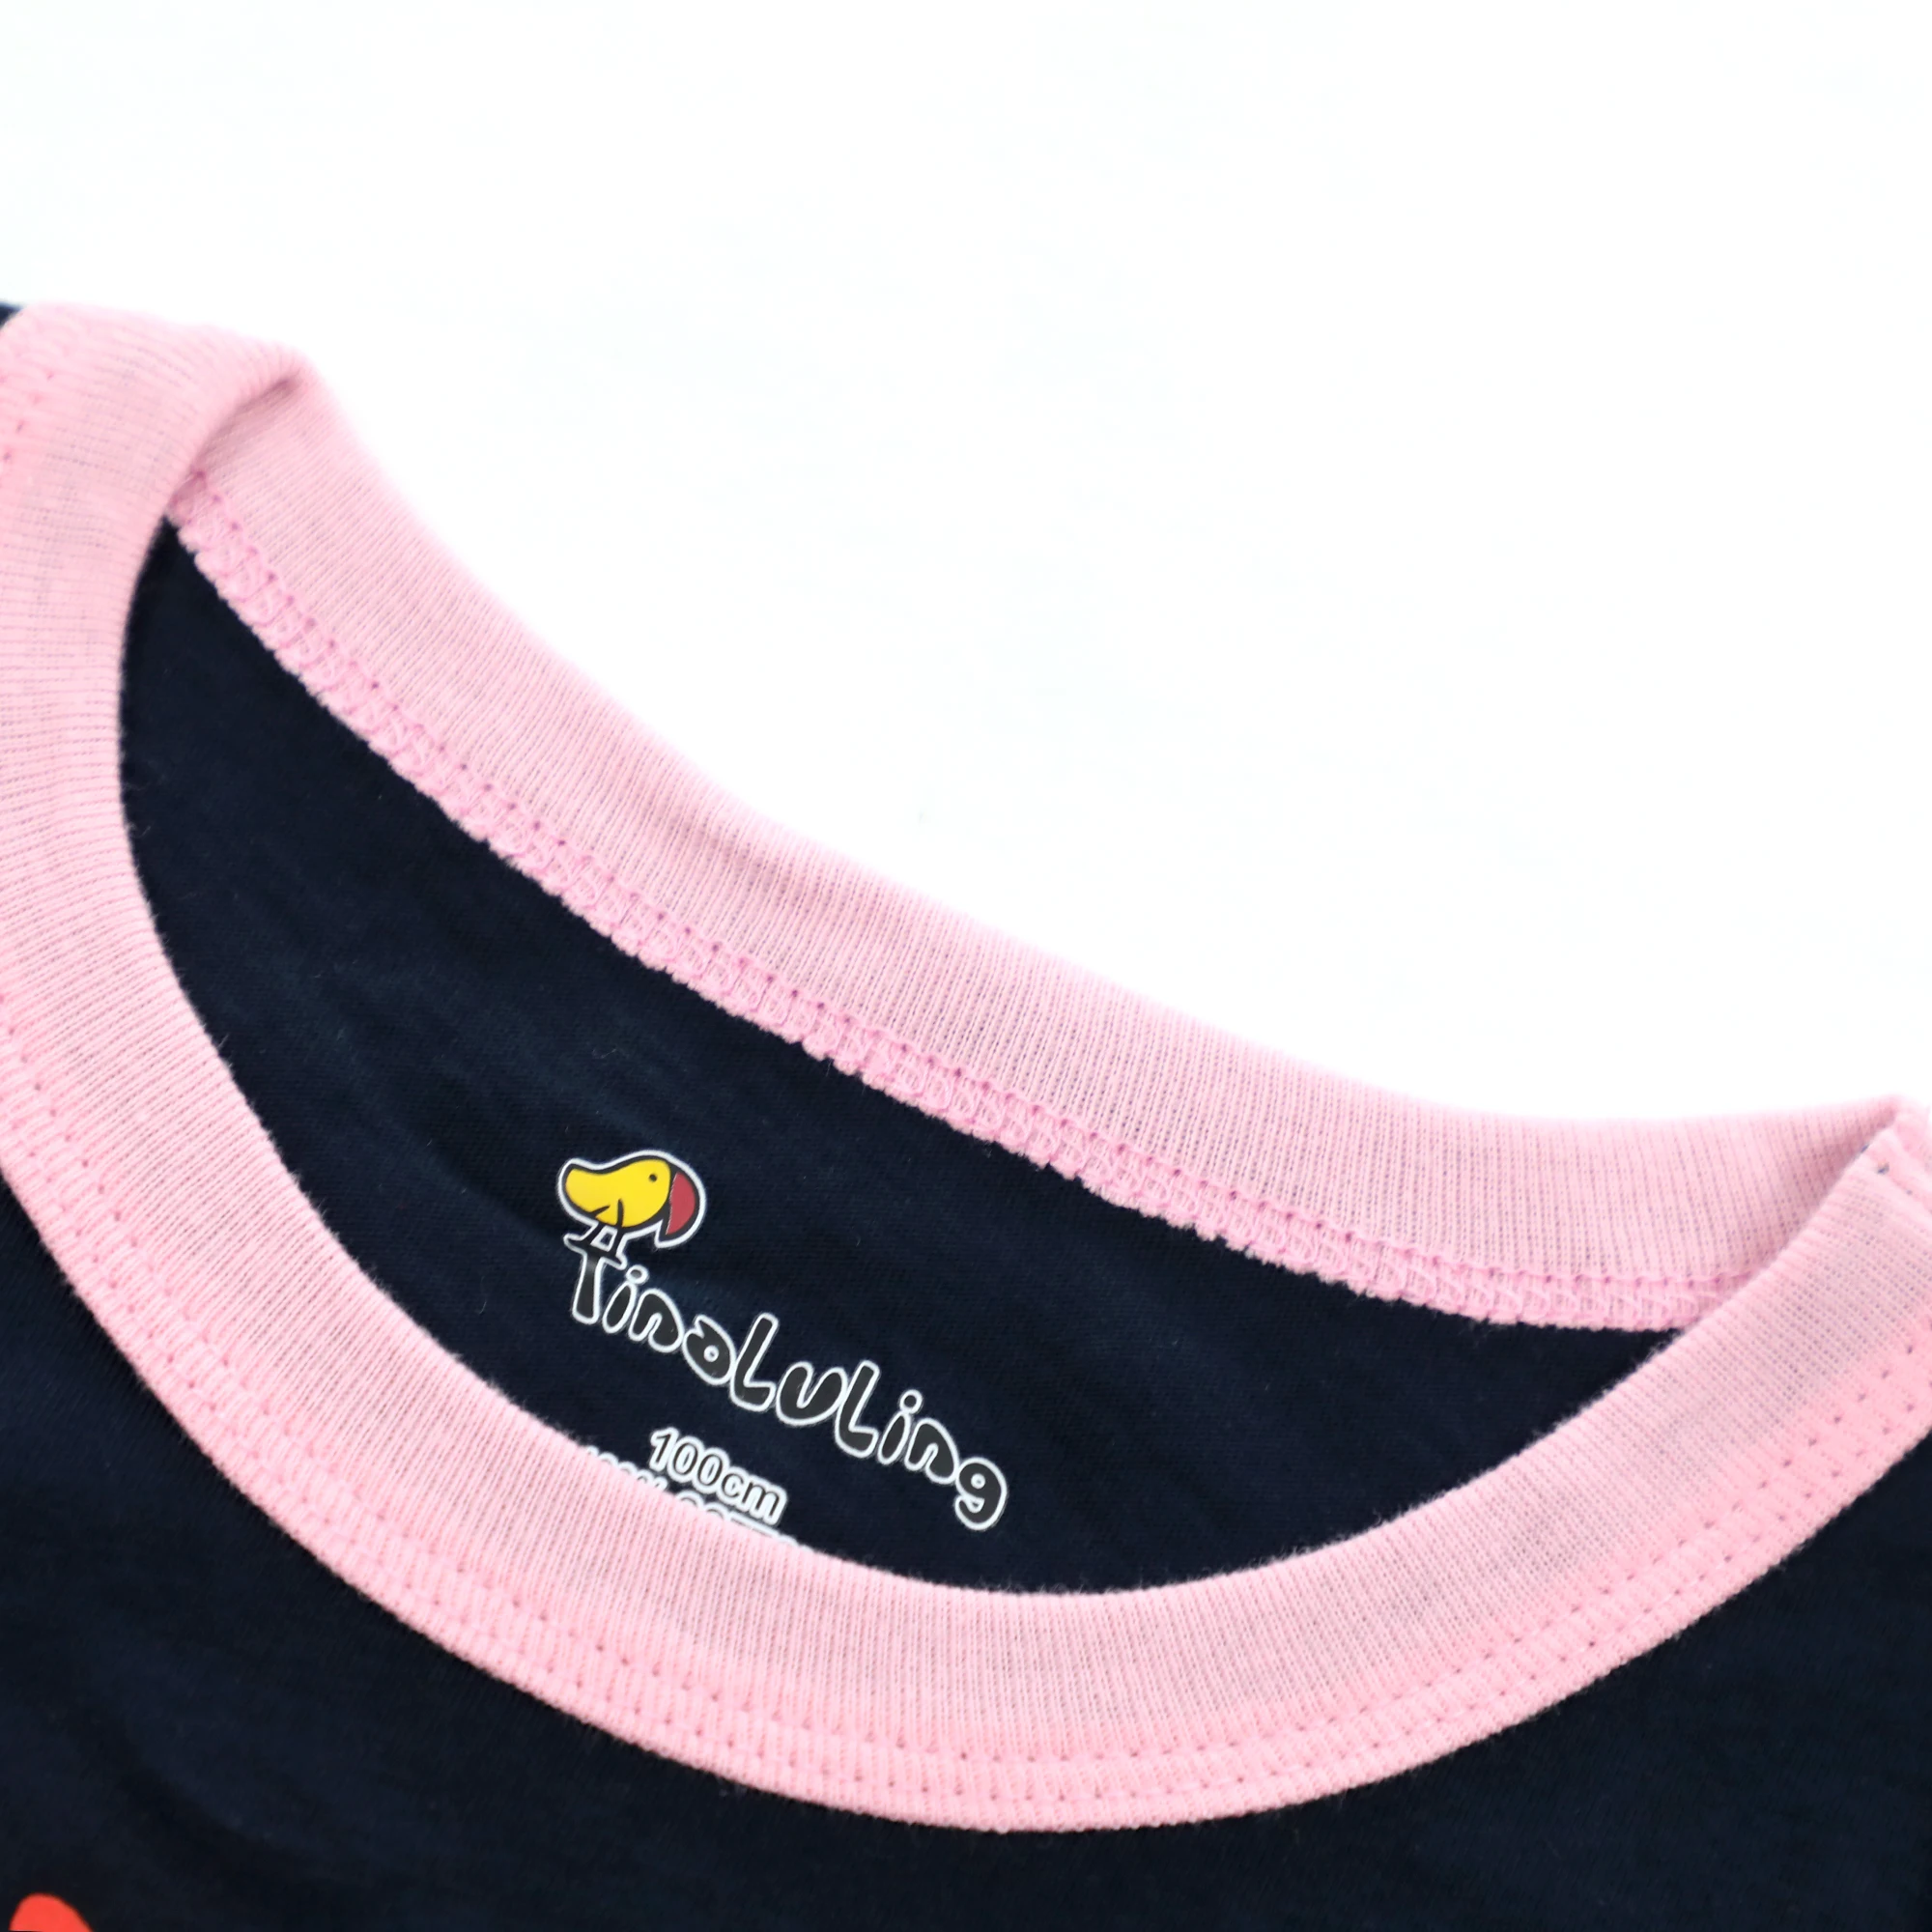 Одежда для маленьких мальчиков одежда с фламинго для маленьких девочек футболки Забавная детская футболка детские футболки для девочек и мальчиков, топы